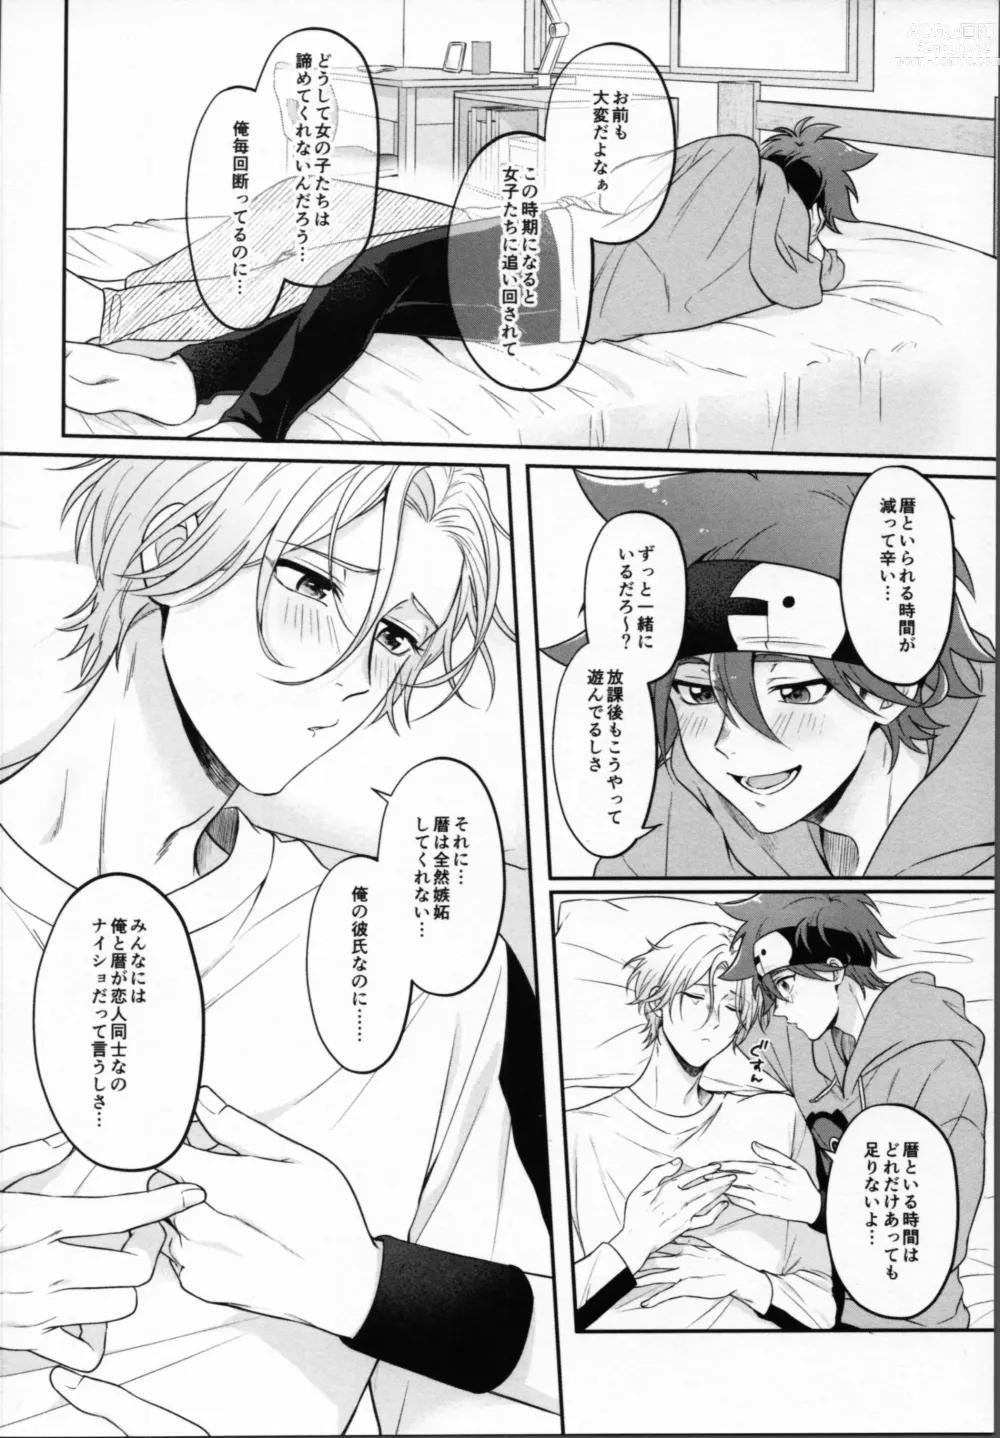 Page 9 of doujinshi 2 Tsuki ga kirai to iukeredo